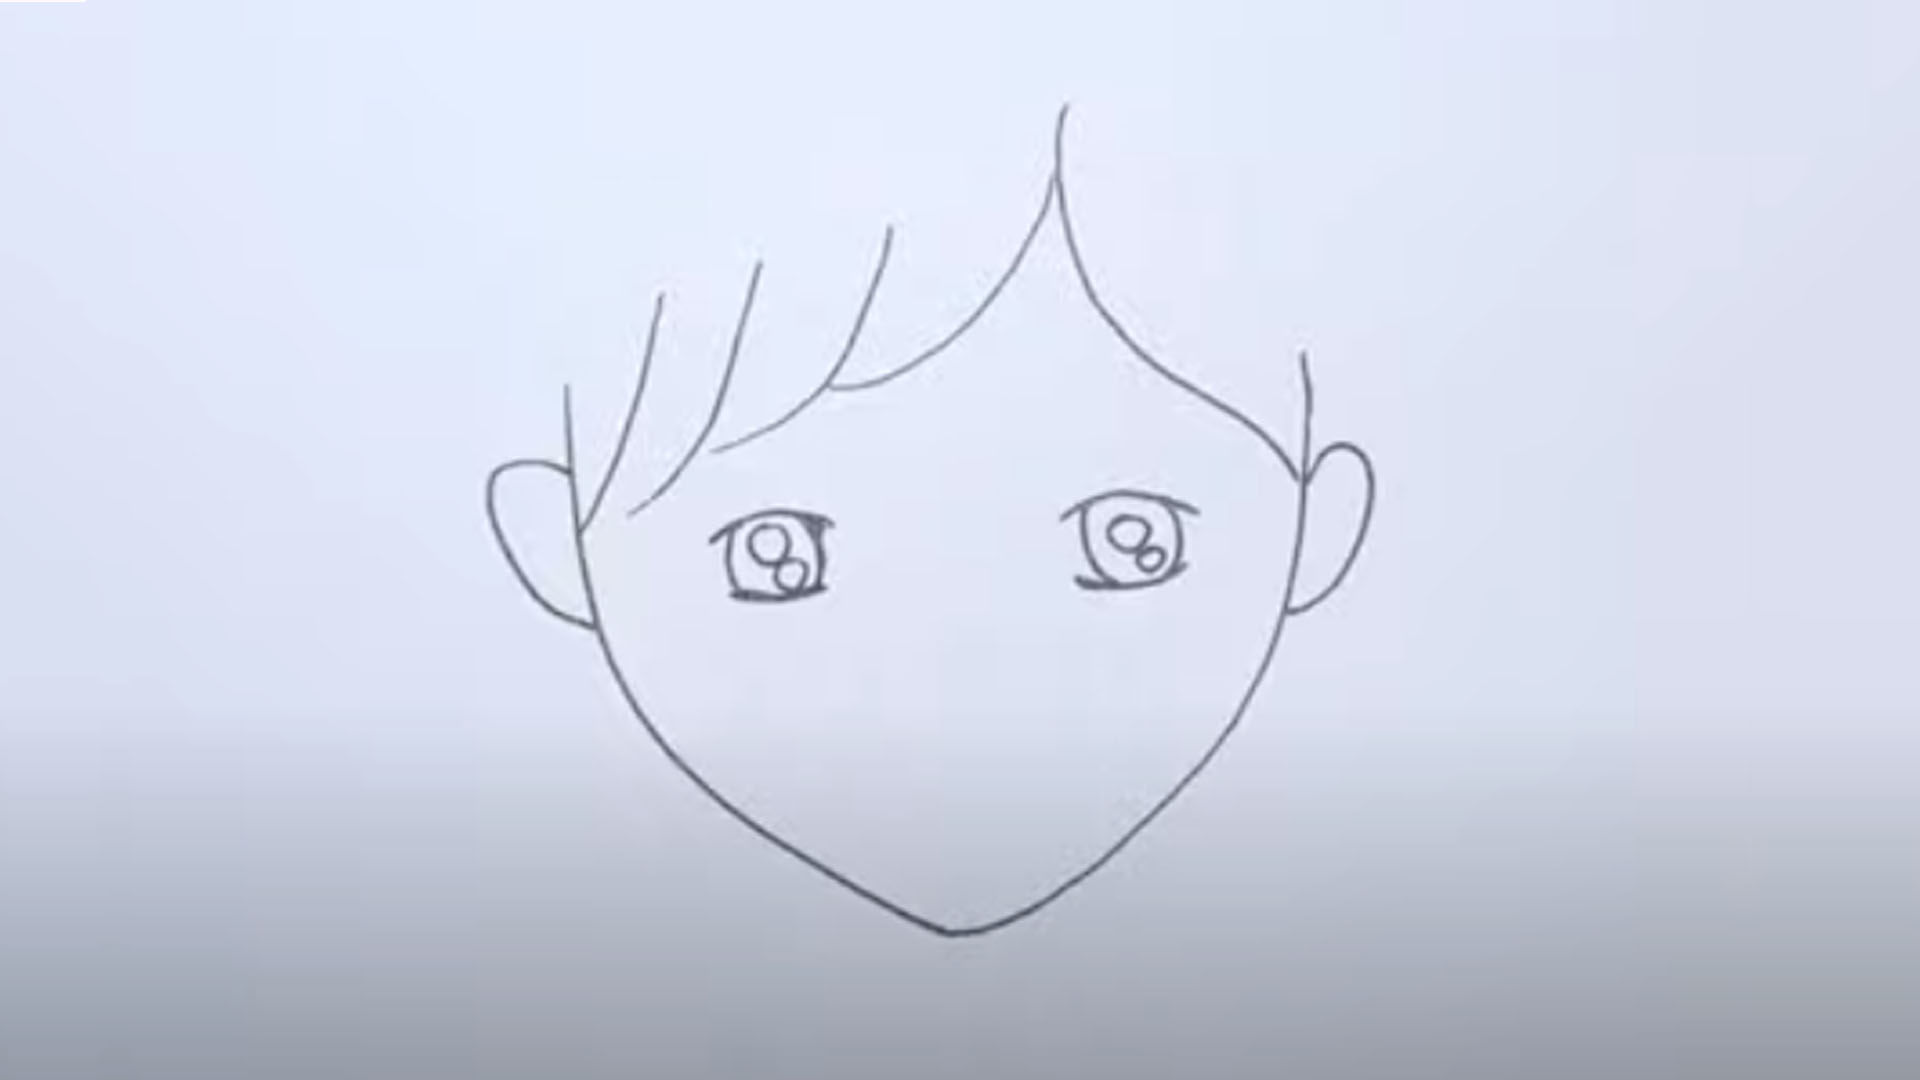 Cách Vẽ Tranh Cô Gái Đơn Giản  How to draw a girl easy  YouTube